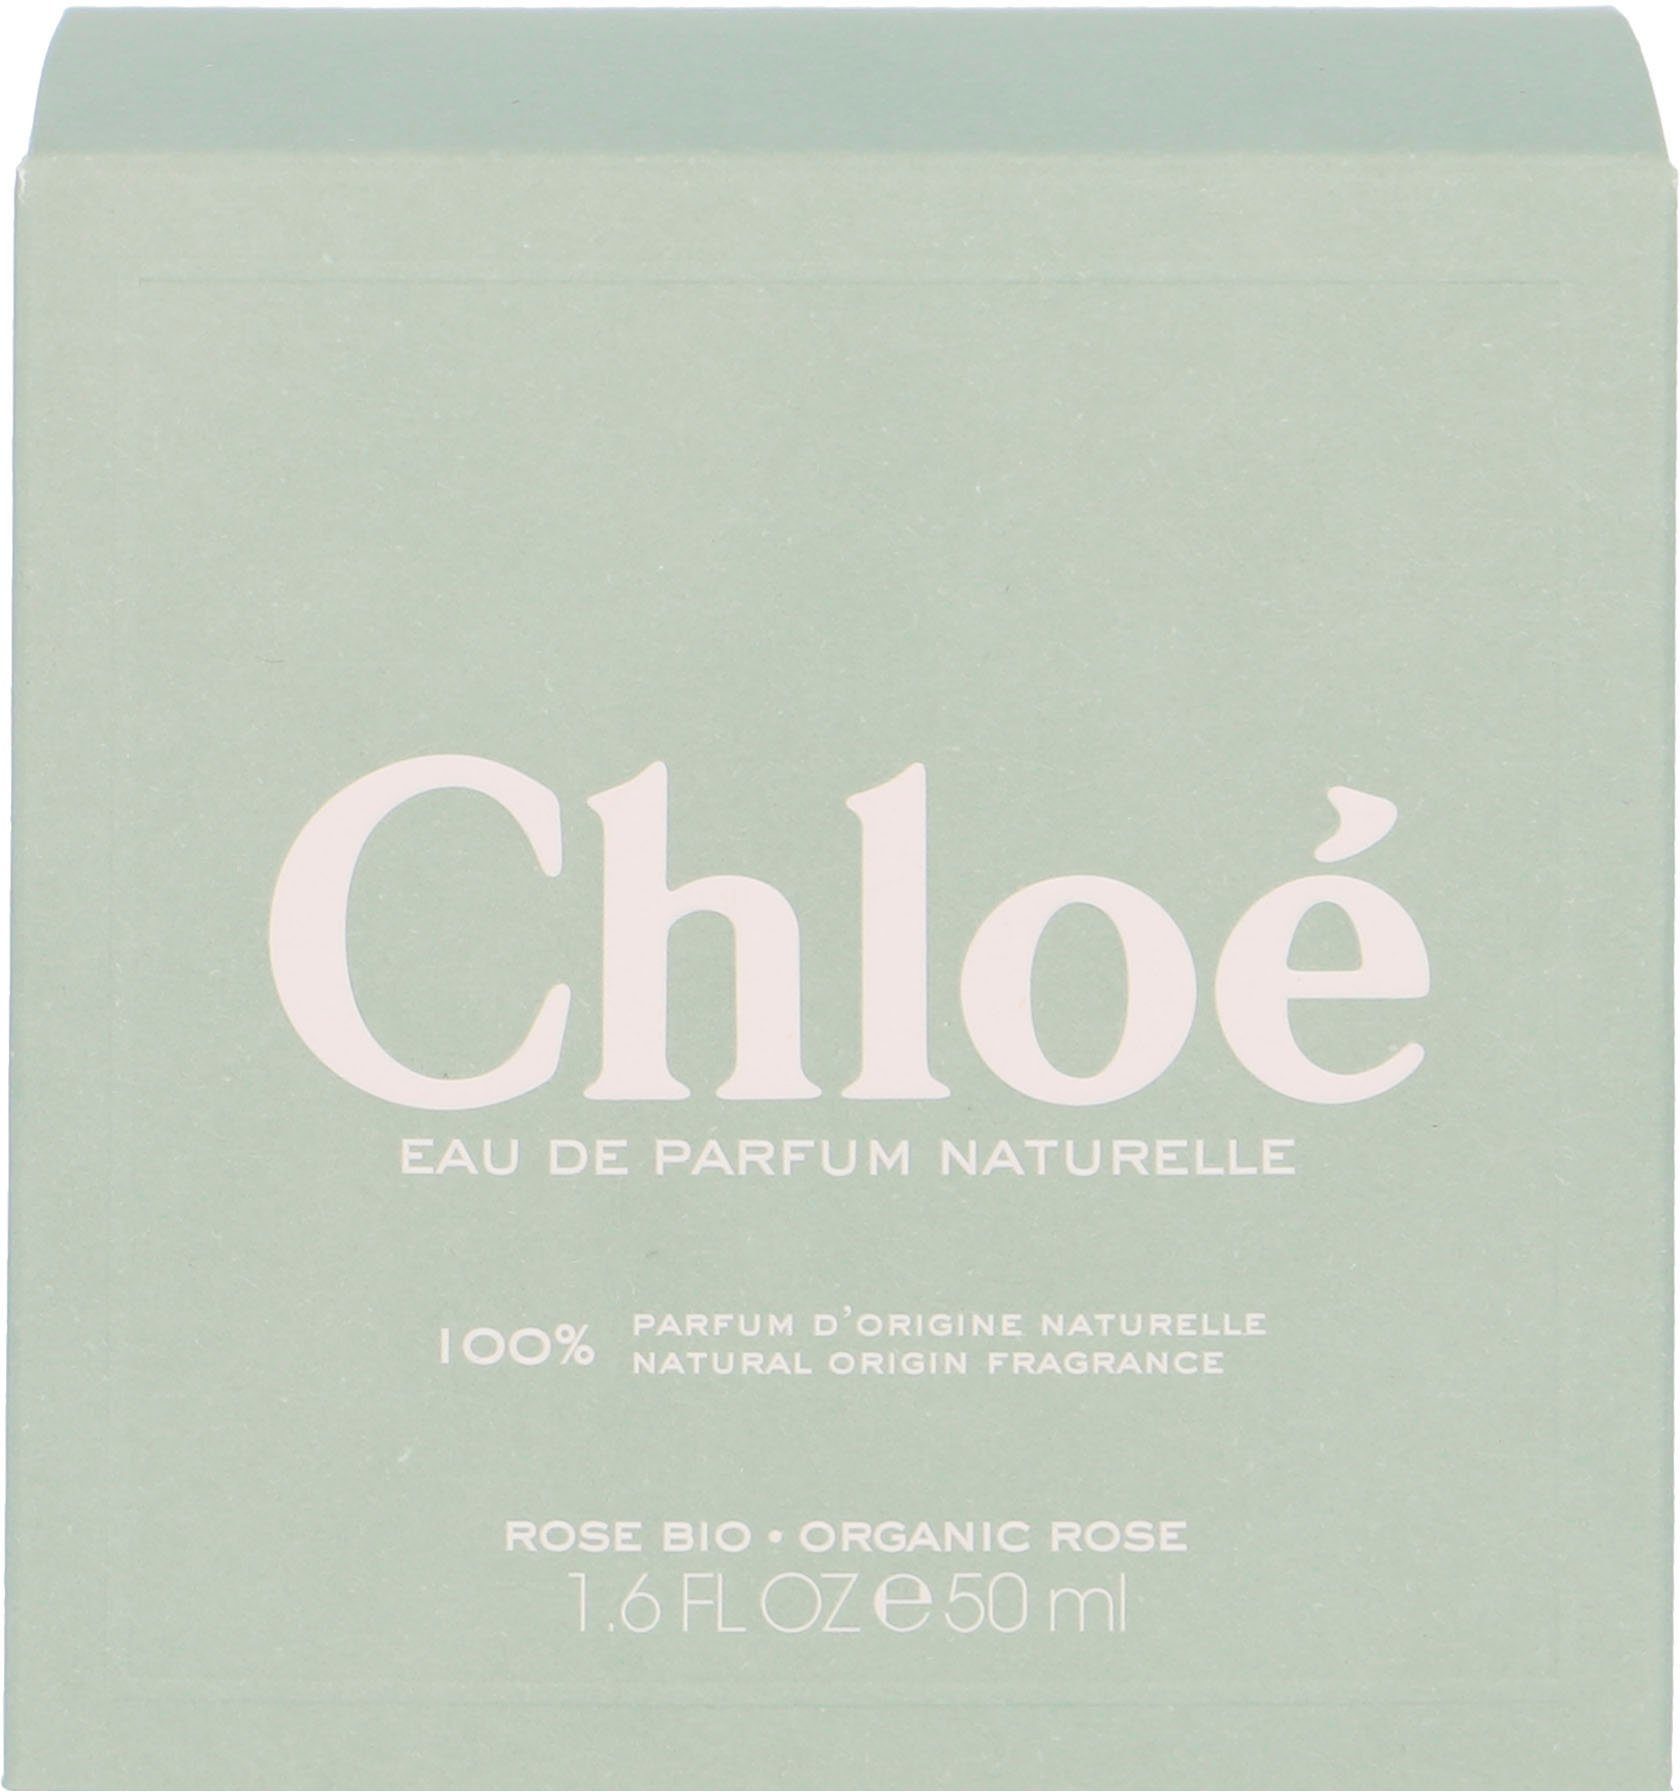 Chloé Eau Naturelle Parfum Signature de